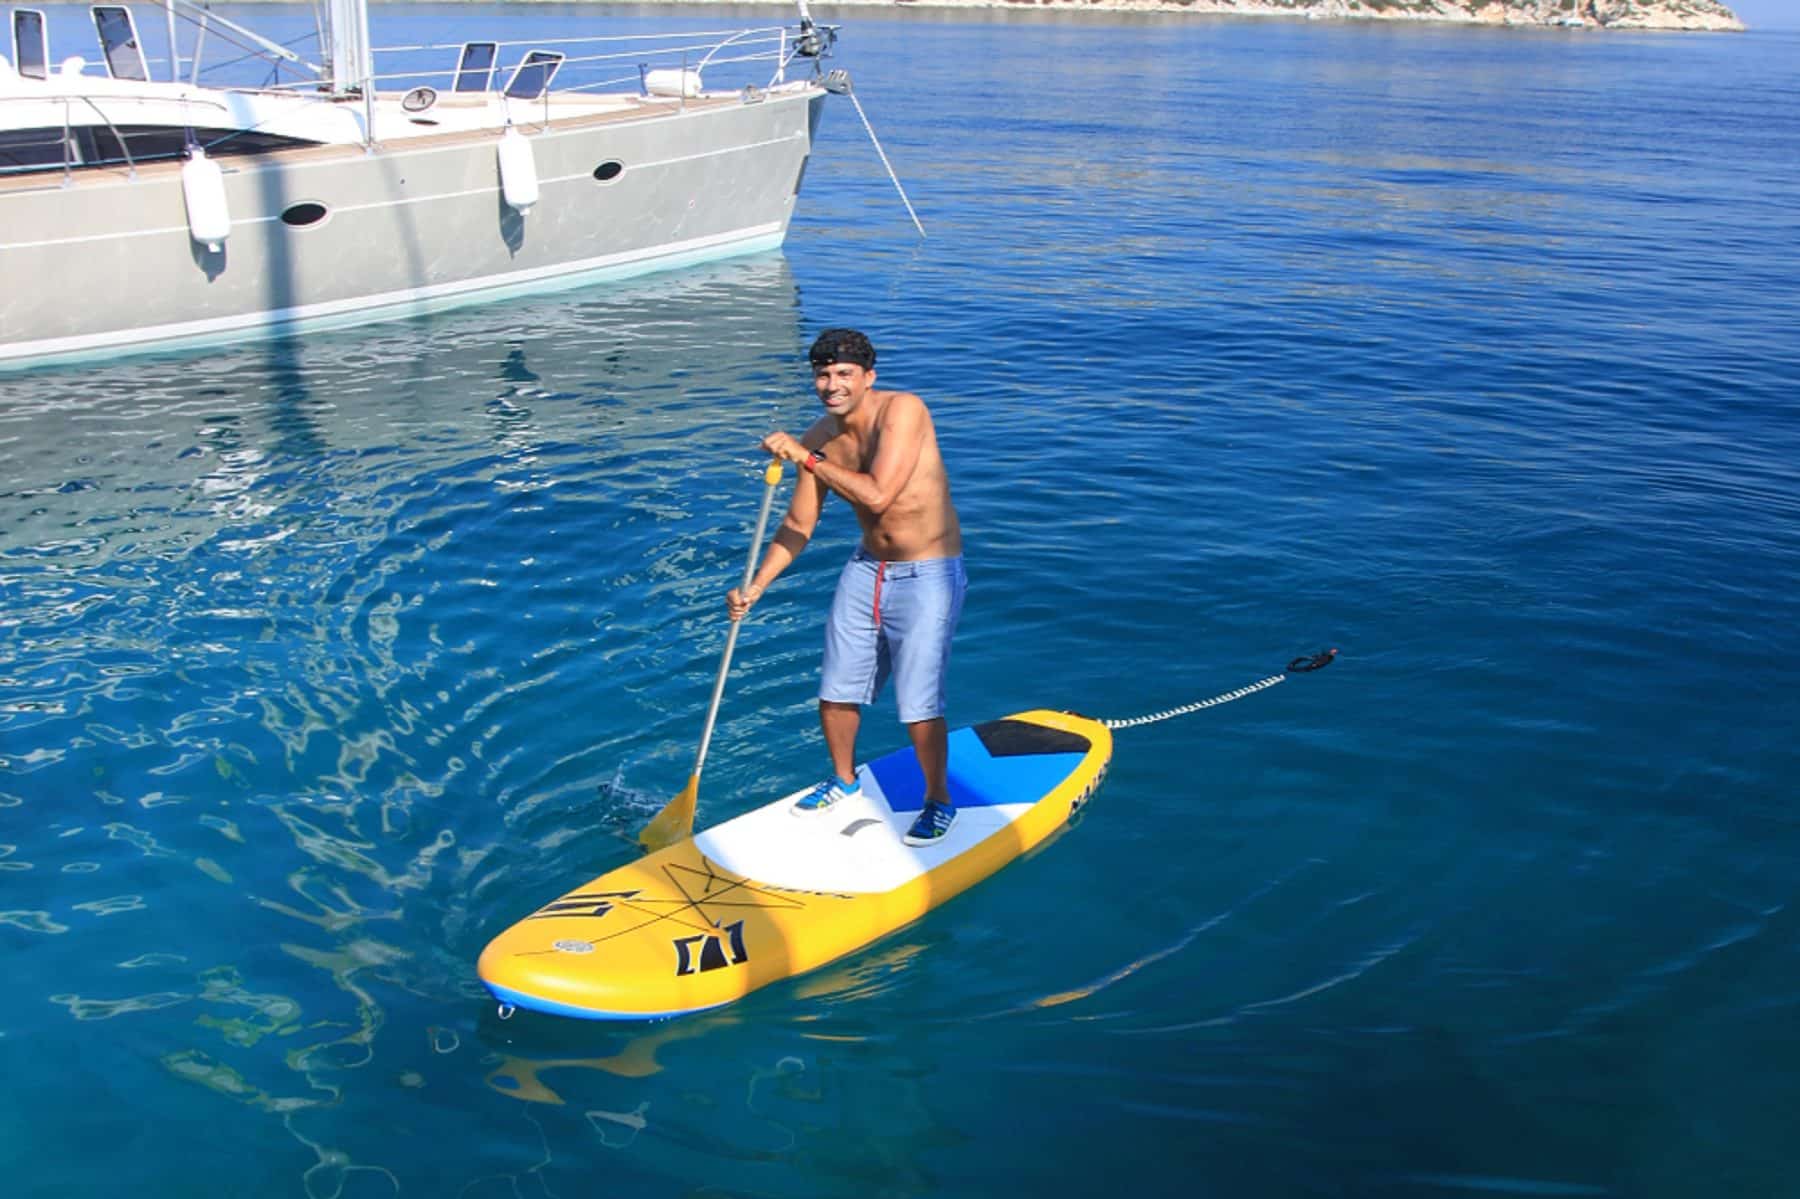 Ein Mann steht auf einem gelben Paddleboard im klaren blauen Wasser neben einer Segelyacht. Er trägt eine Mütze, eine Sonnenbrille, blaue Shorts und eine graue Schwimmweste und lächelt, während er paddelt.